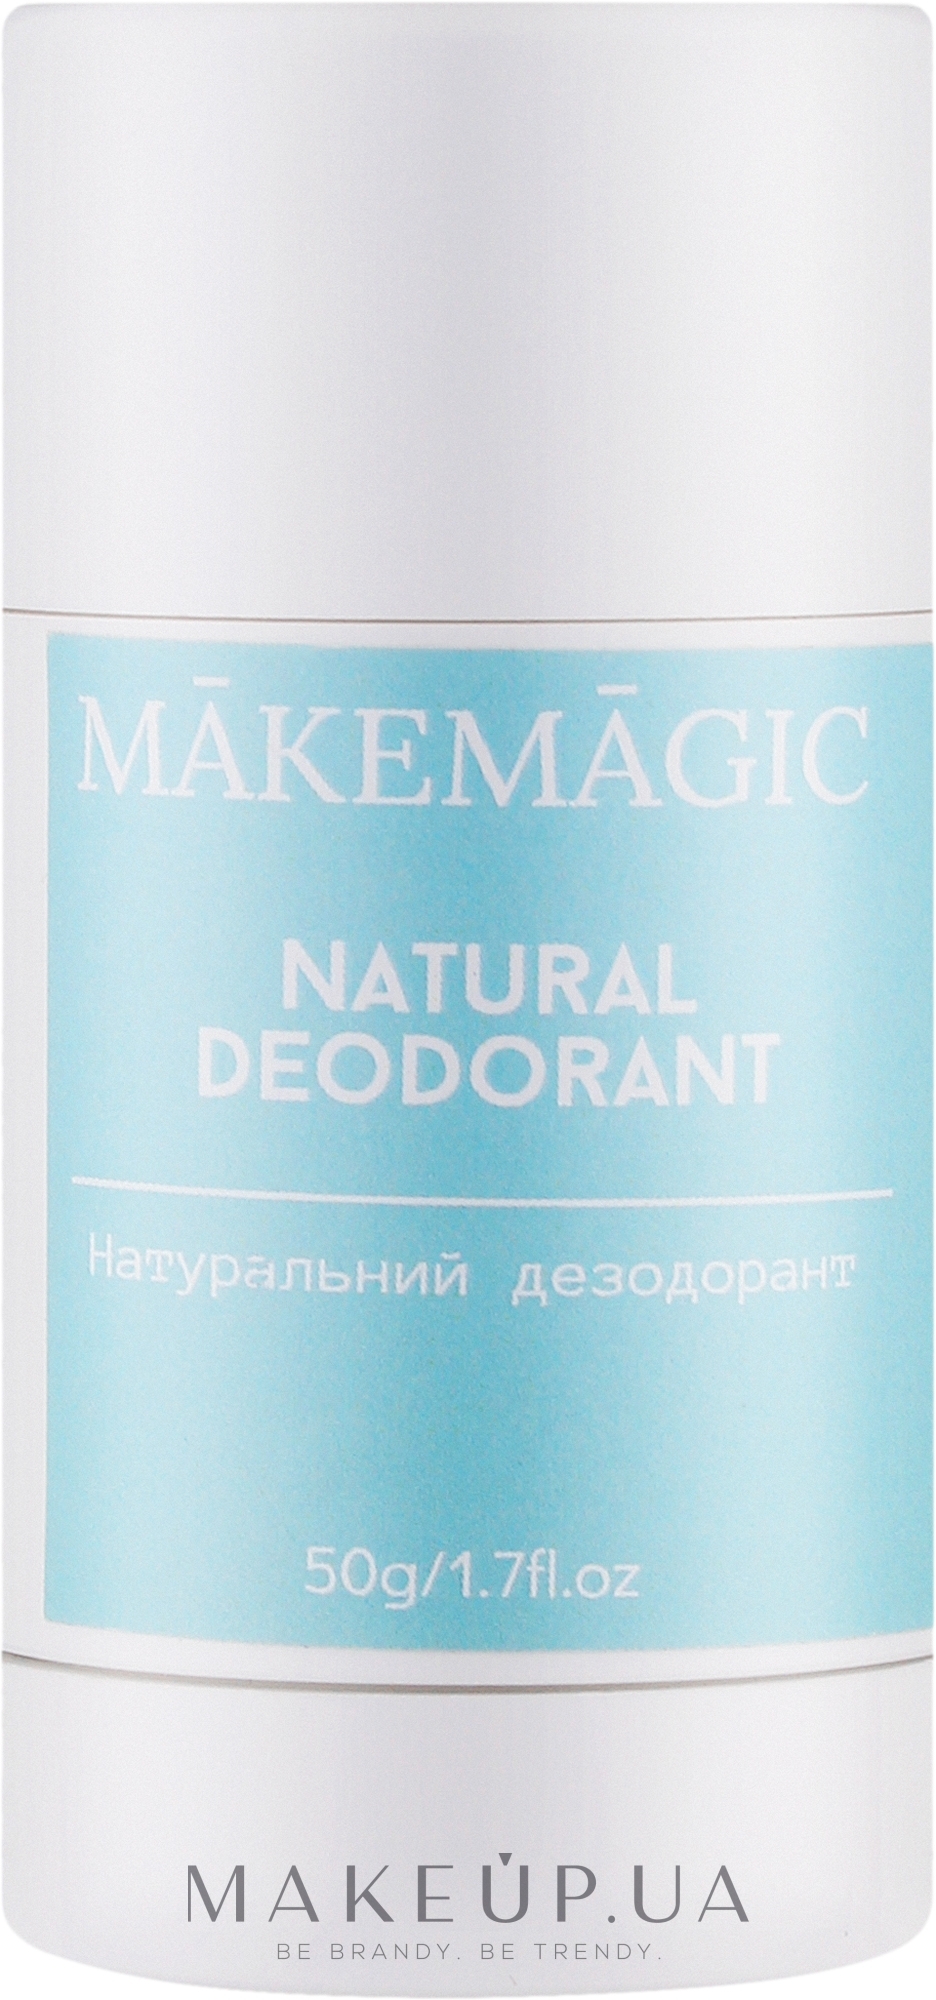 Натуральный дезодорант для тела - Makemagic Natural Deodorant — фото 50g